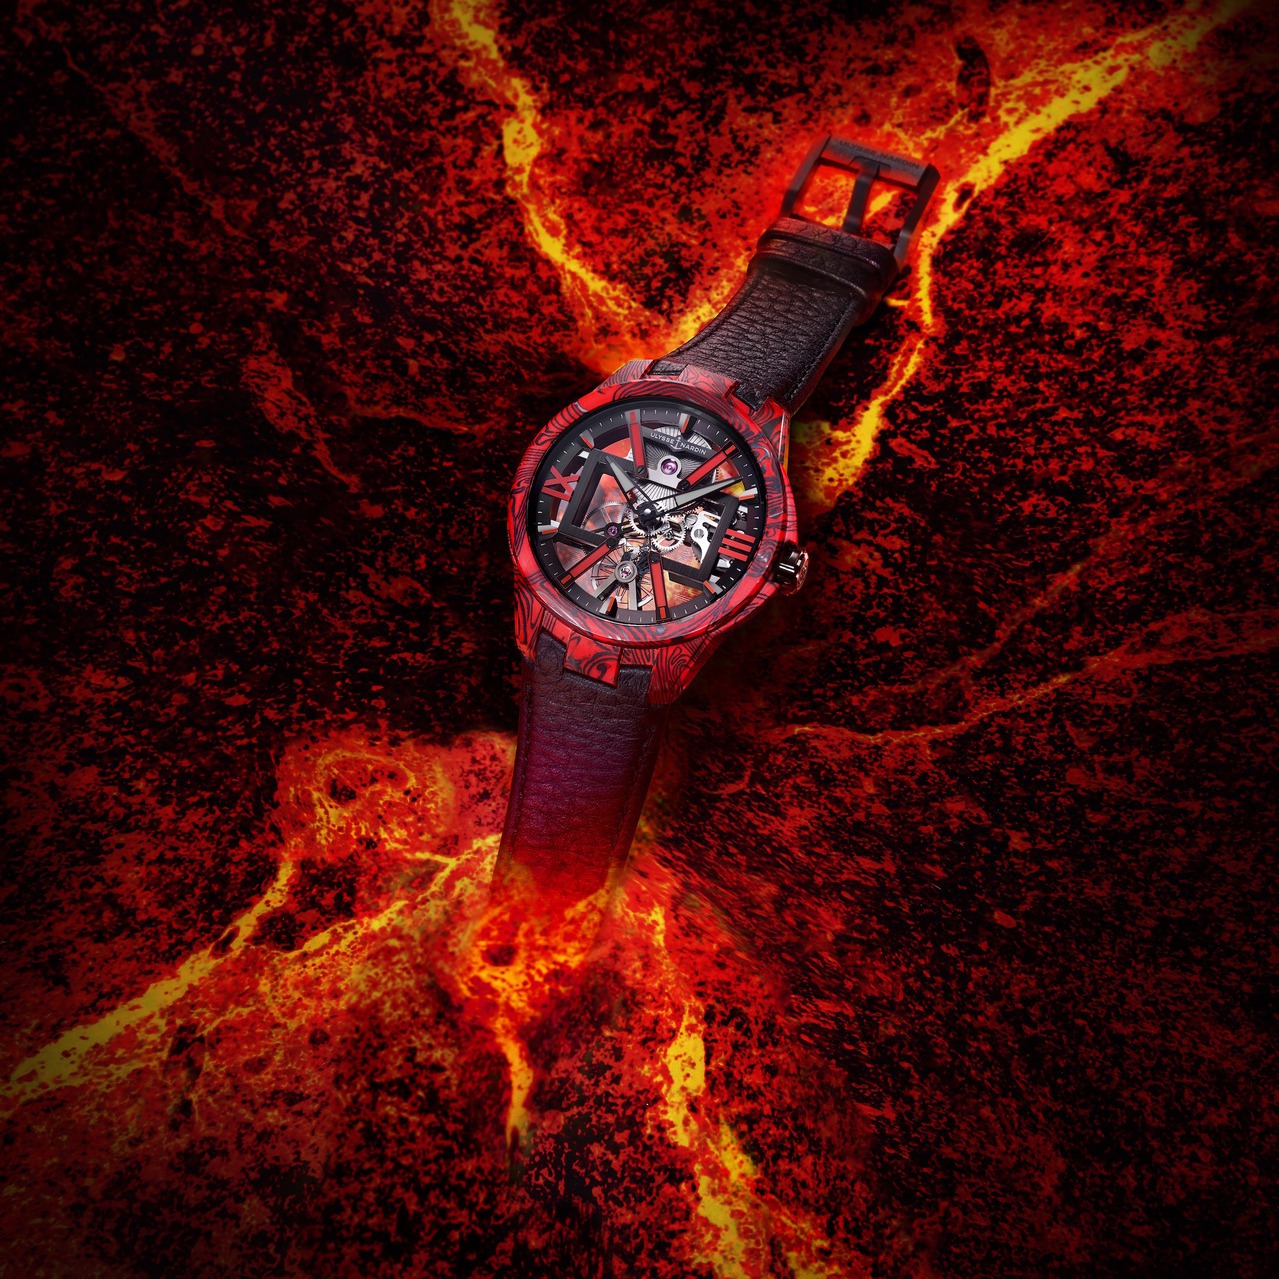 色即是空 鏤空腕錶示現赤焰與科幻之美